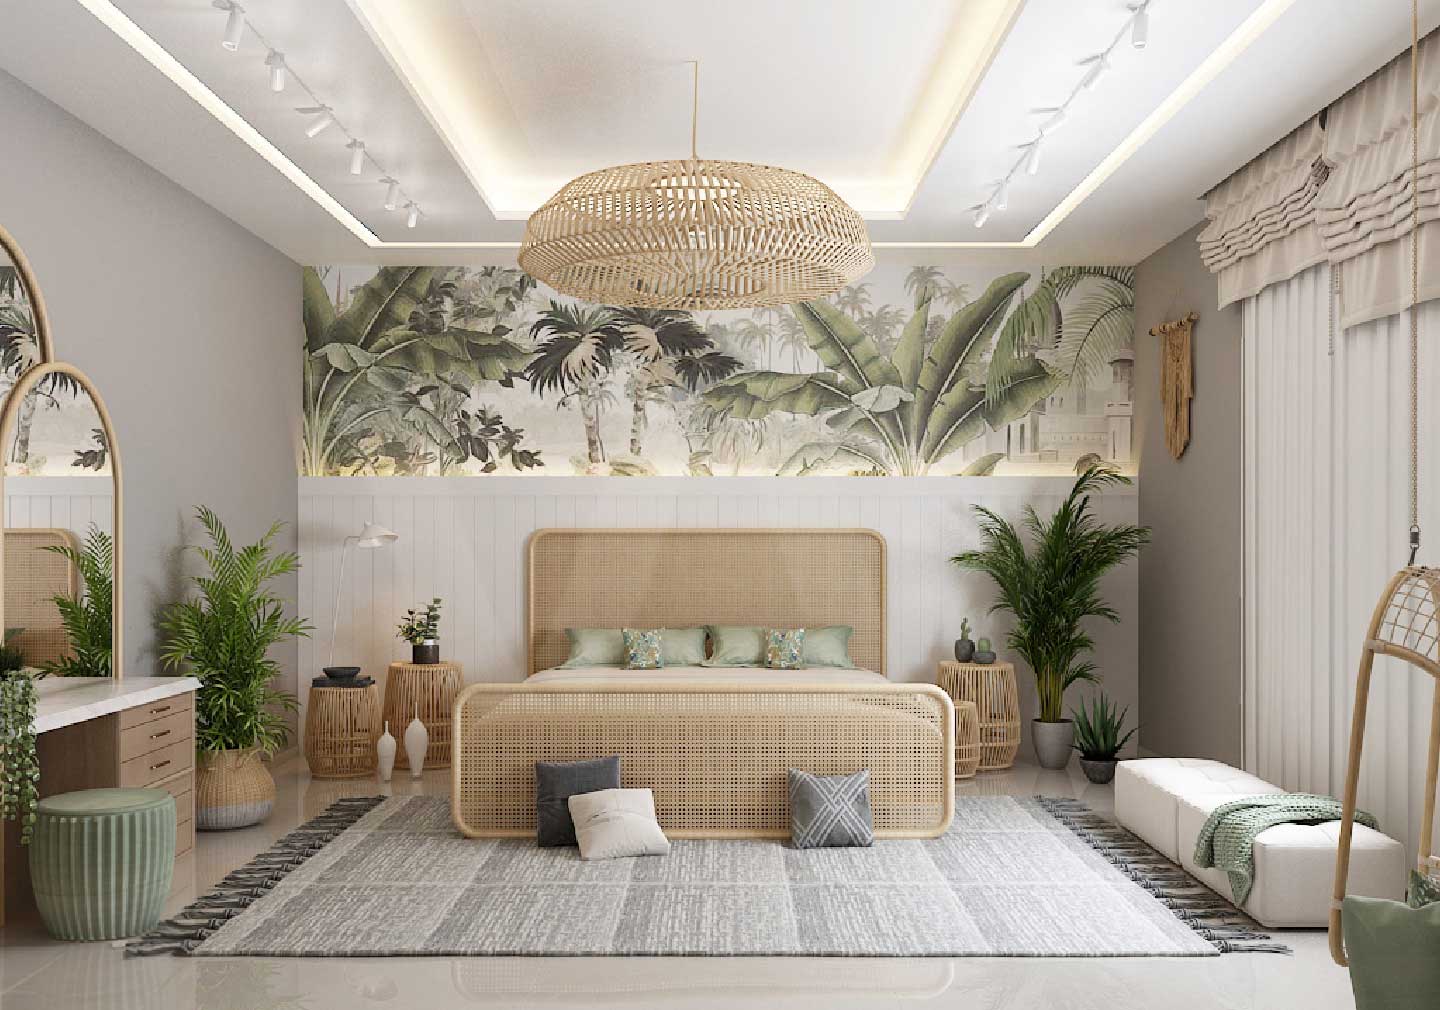 Bedroom Plant Display Ideas 